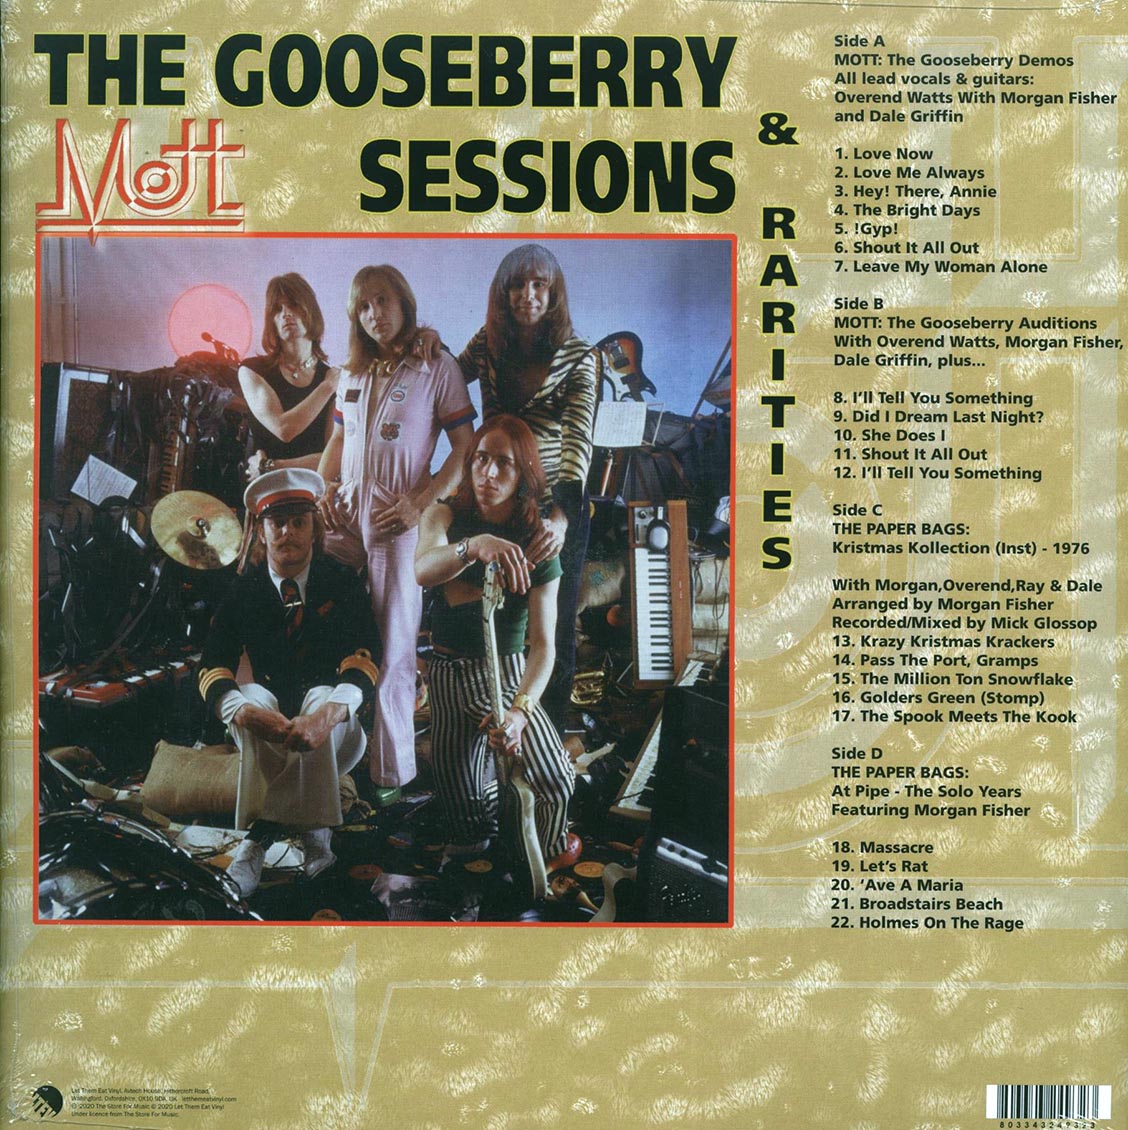 Mott - The Gooseberry Sessions & Rarities